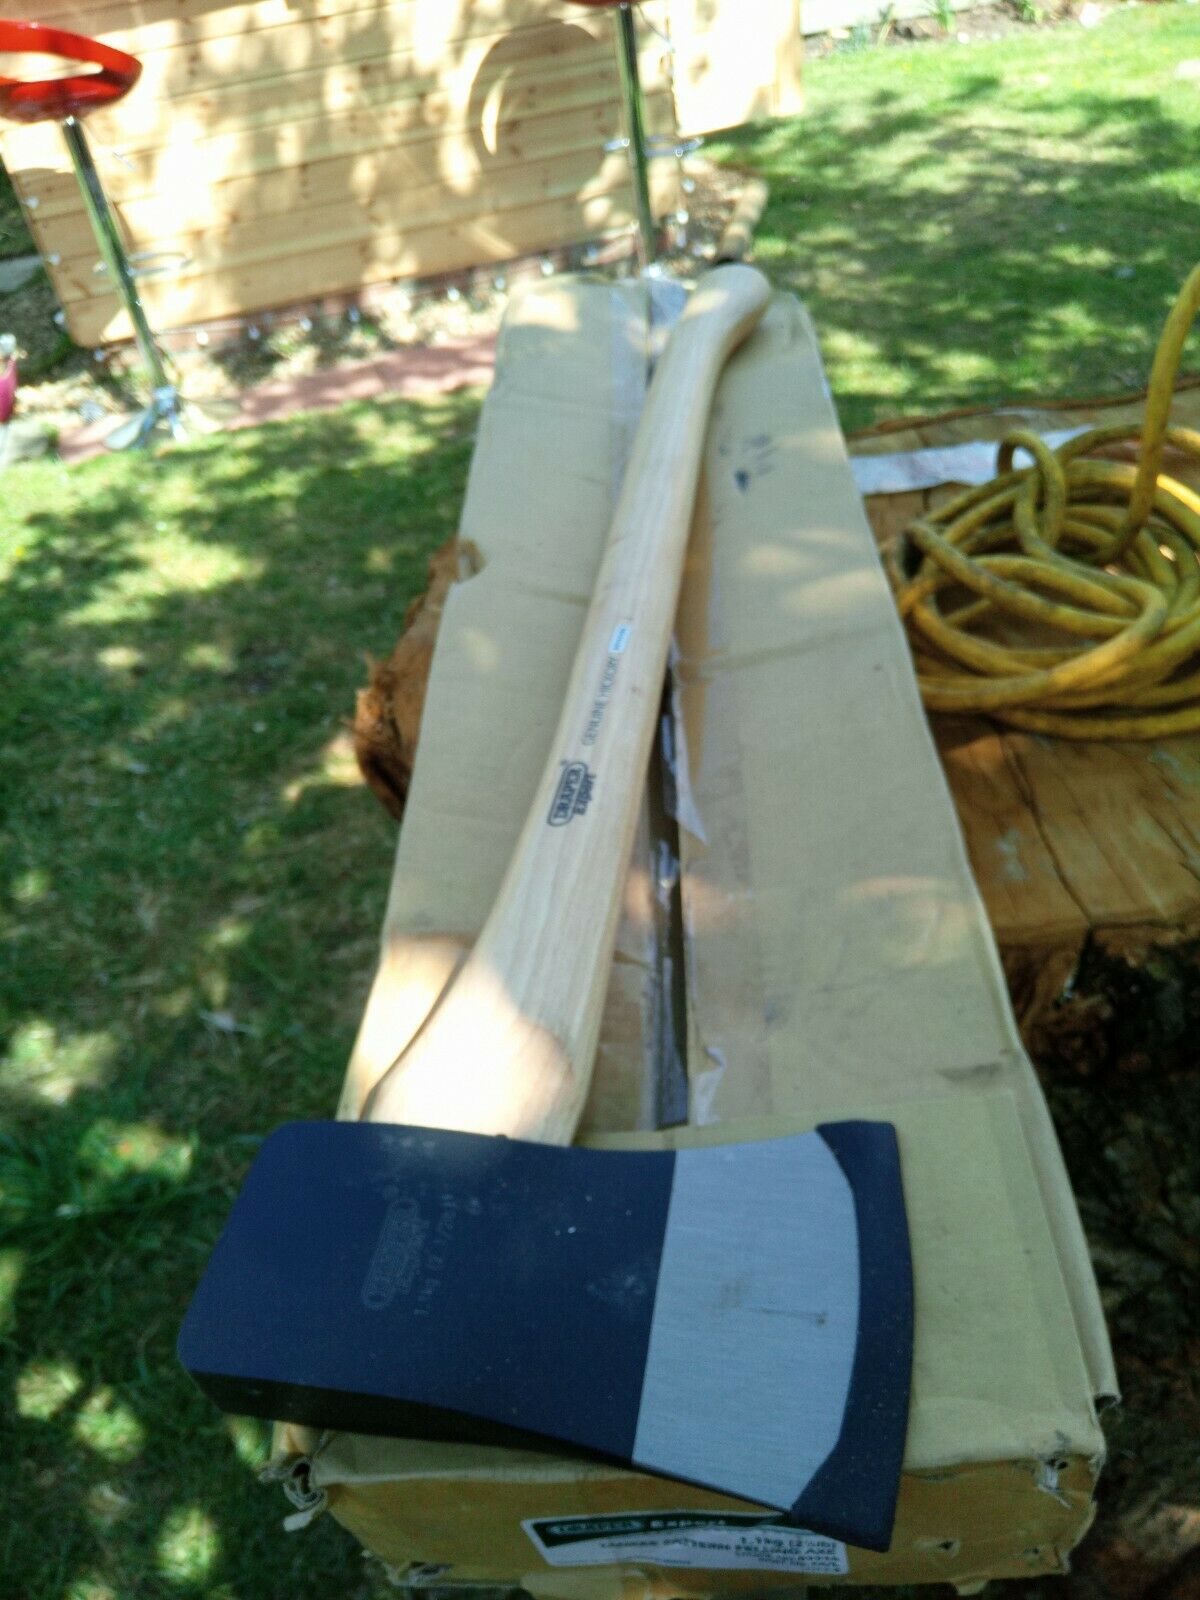 Draper 09946 Yankee pattern felling axe (1.1kg)